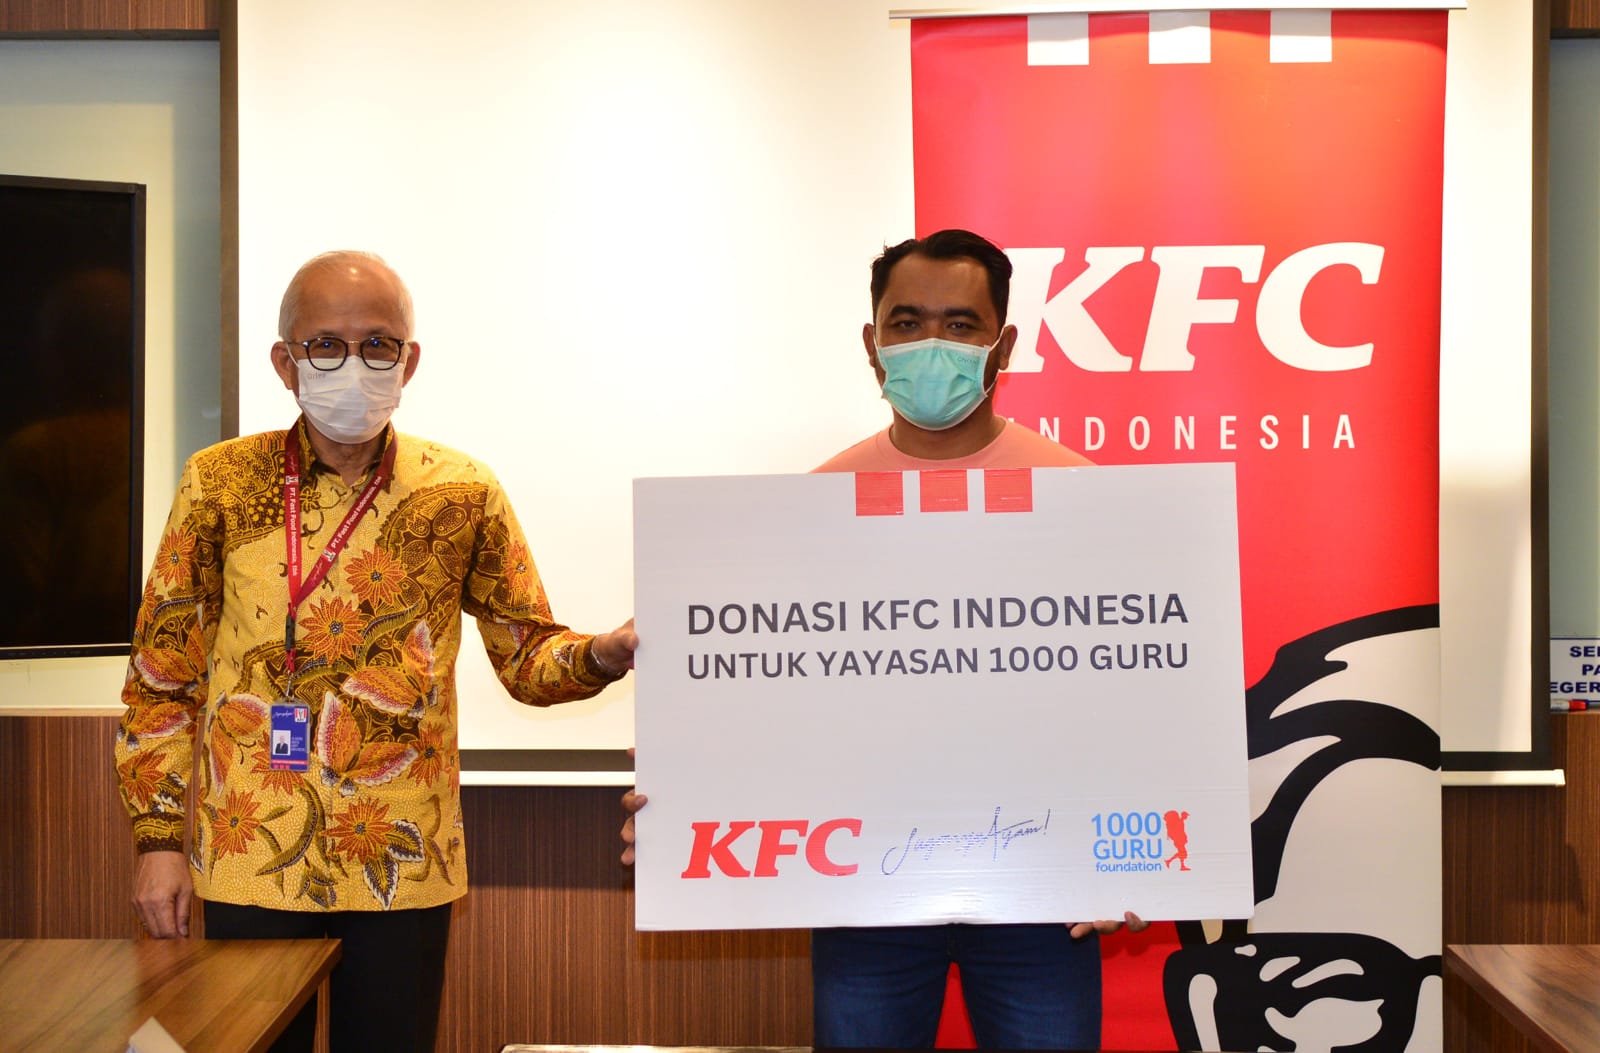 KFC Indonesia Serahkan Donasi Kepada Yayasan 1000 Guru